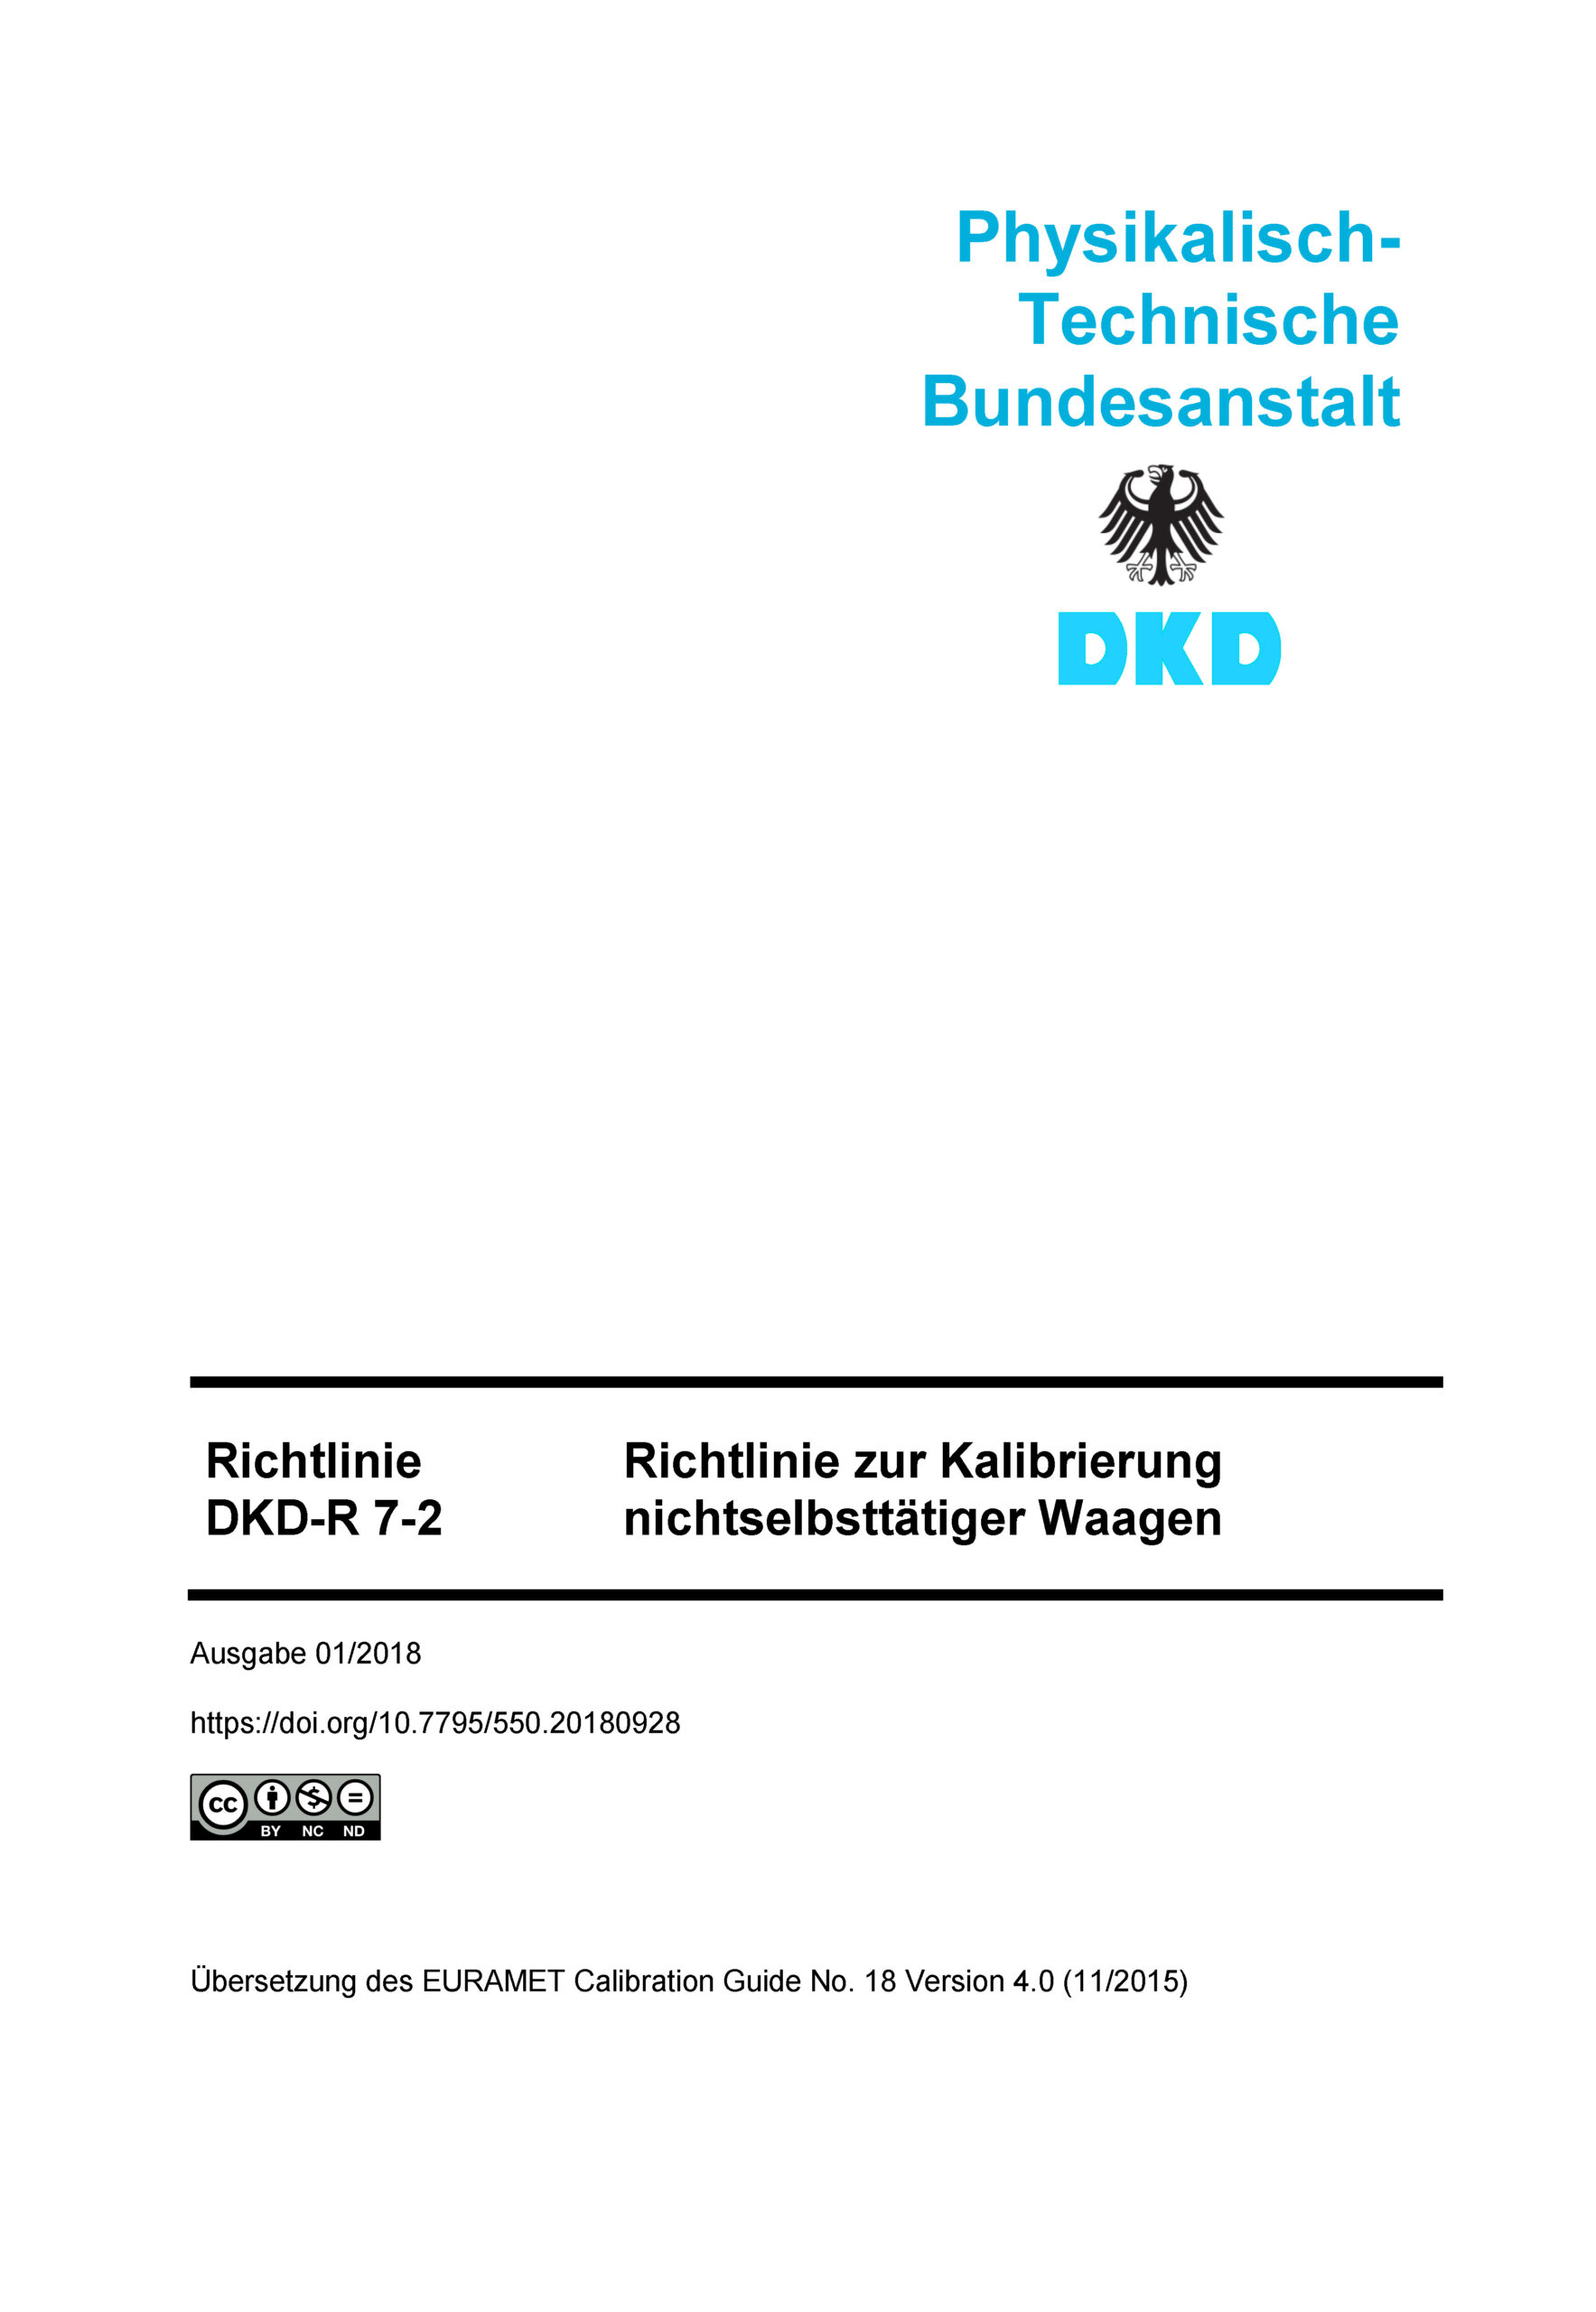 Download_Richtlinie DKD-R 7-2 Richtlinie zur Kalibrierung nichtselbsttätiger Waagen